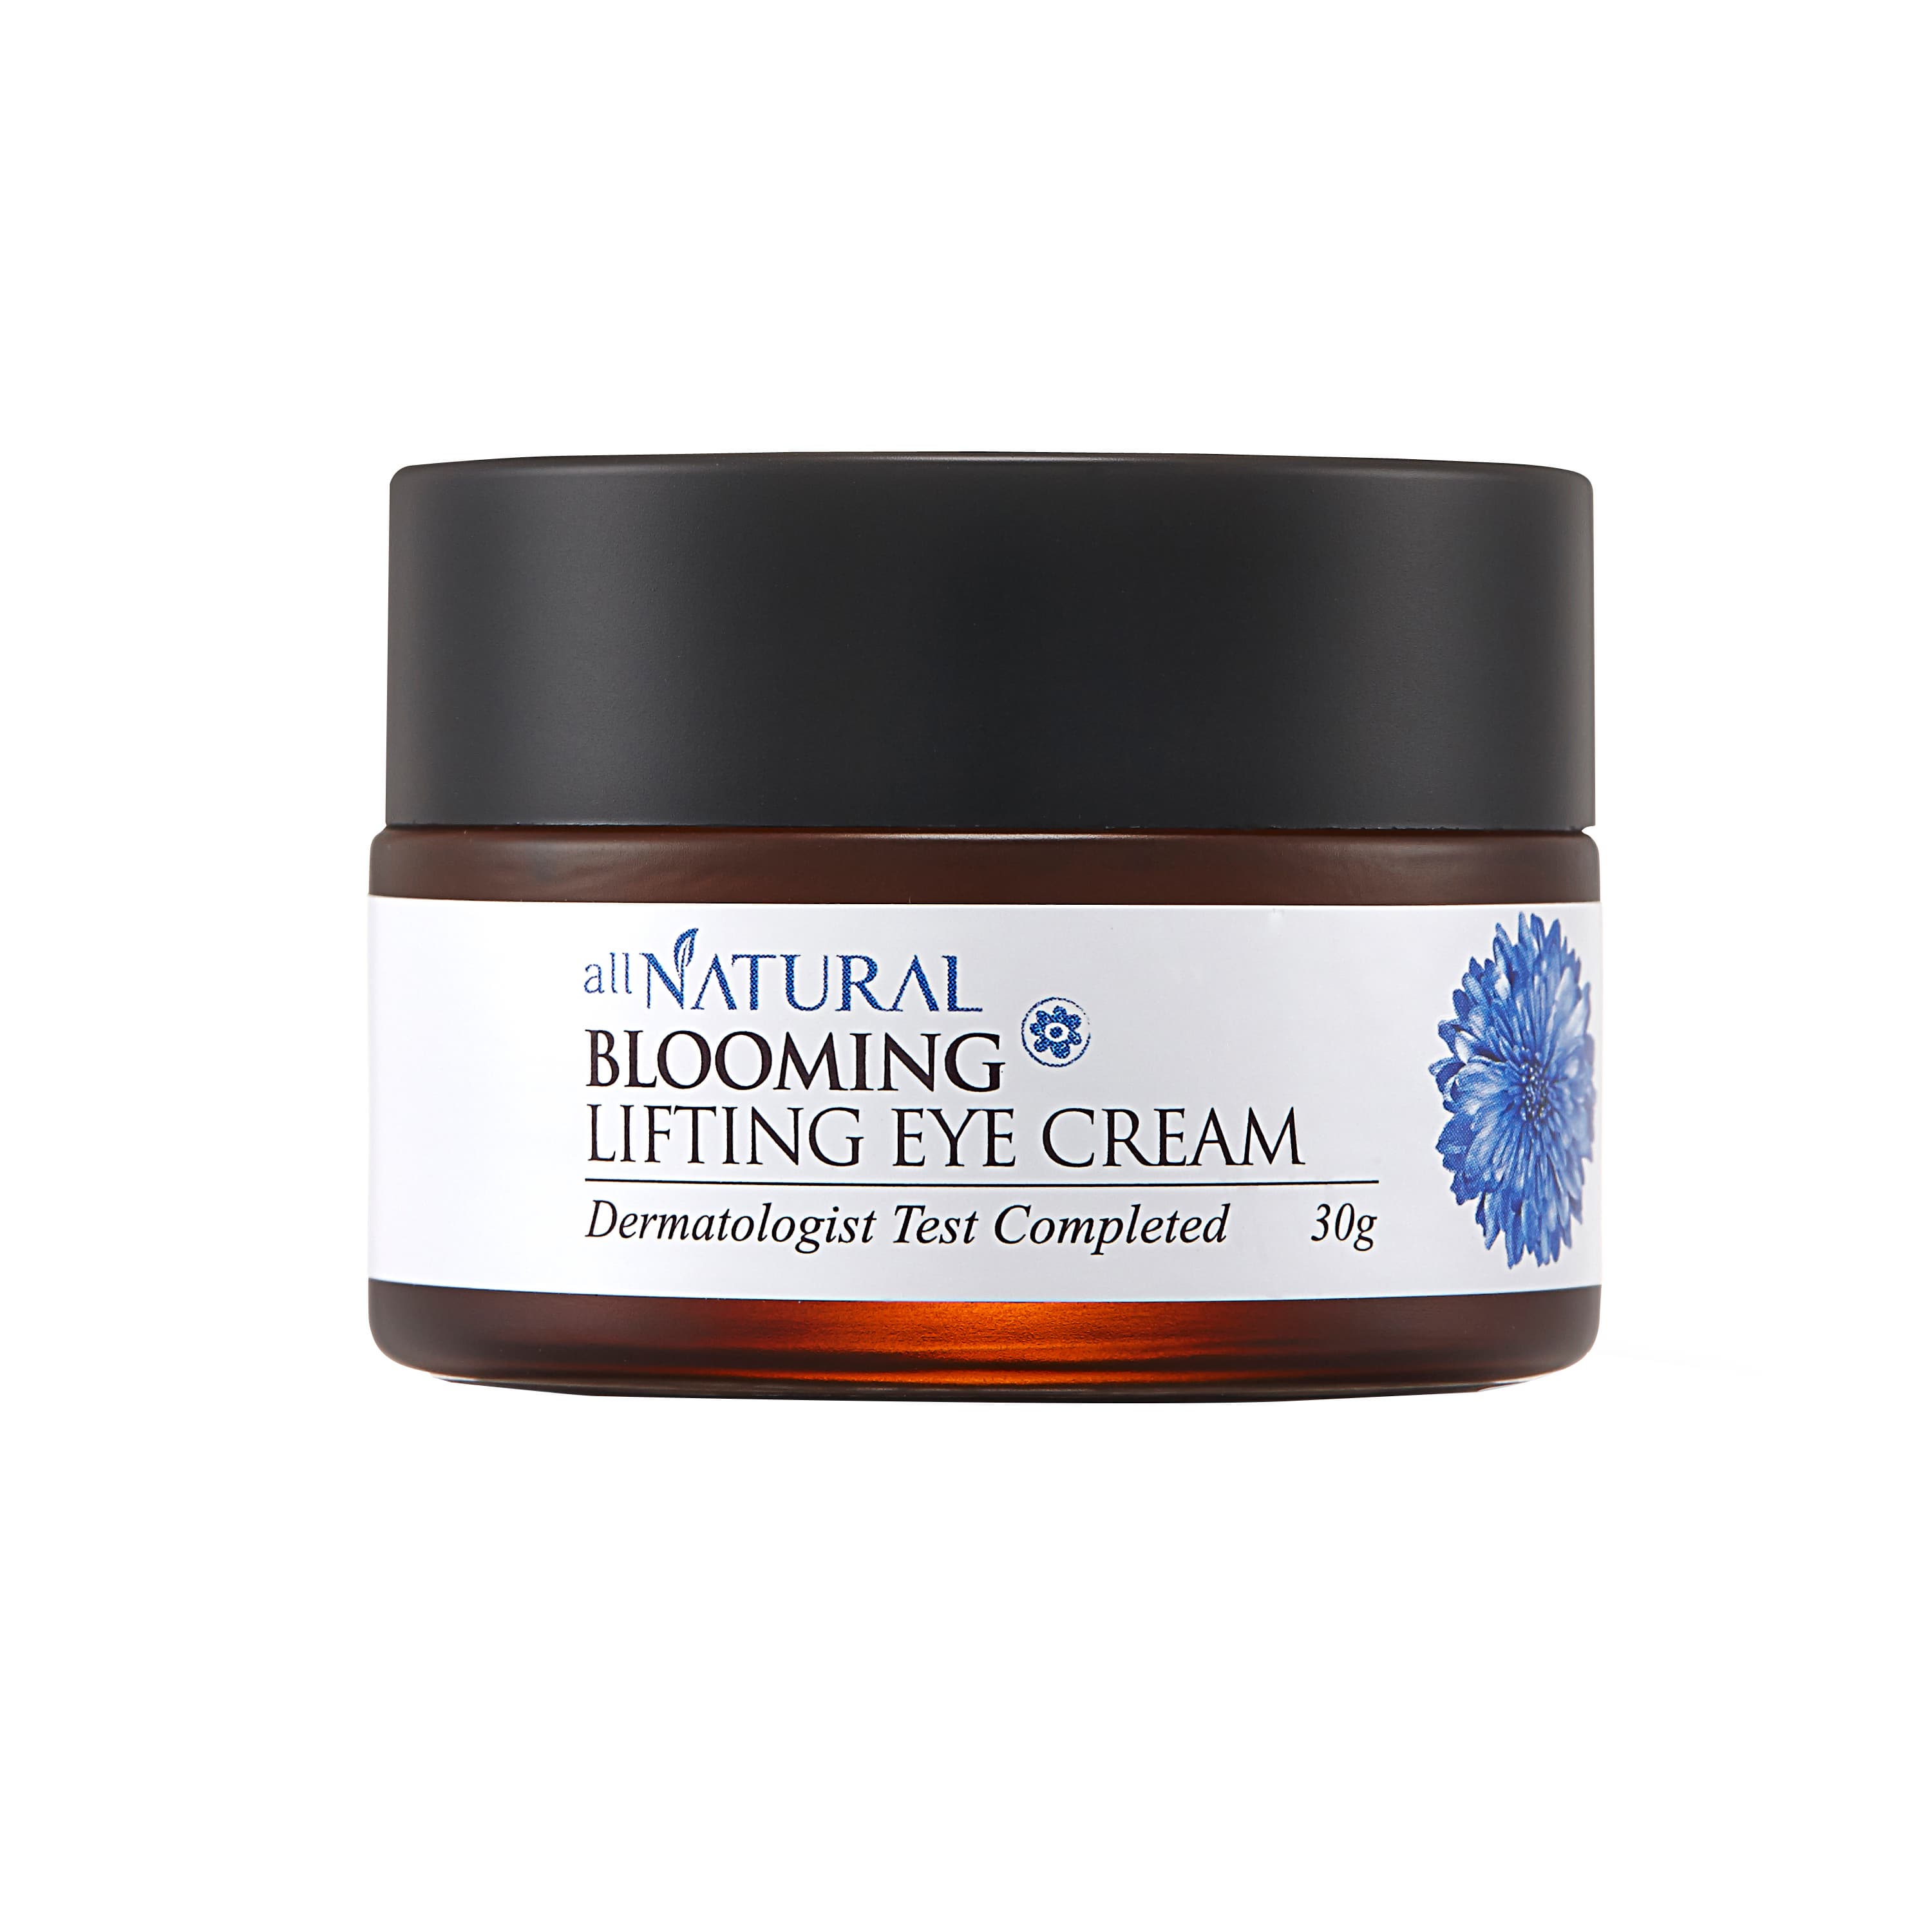 All Natural Blooming Lifting Eye Cream